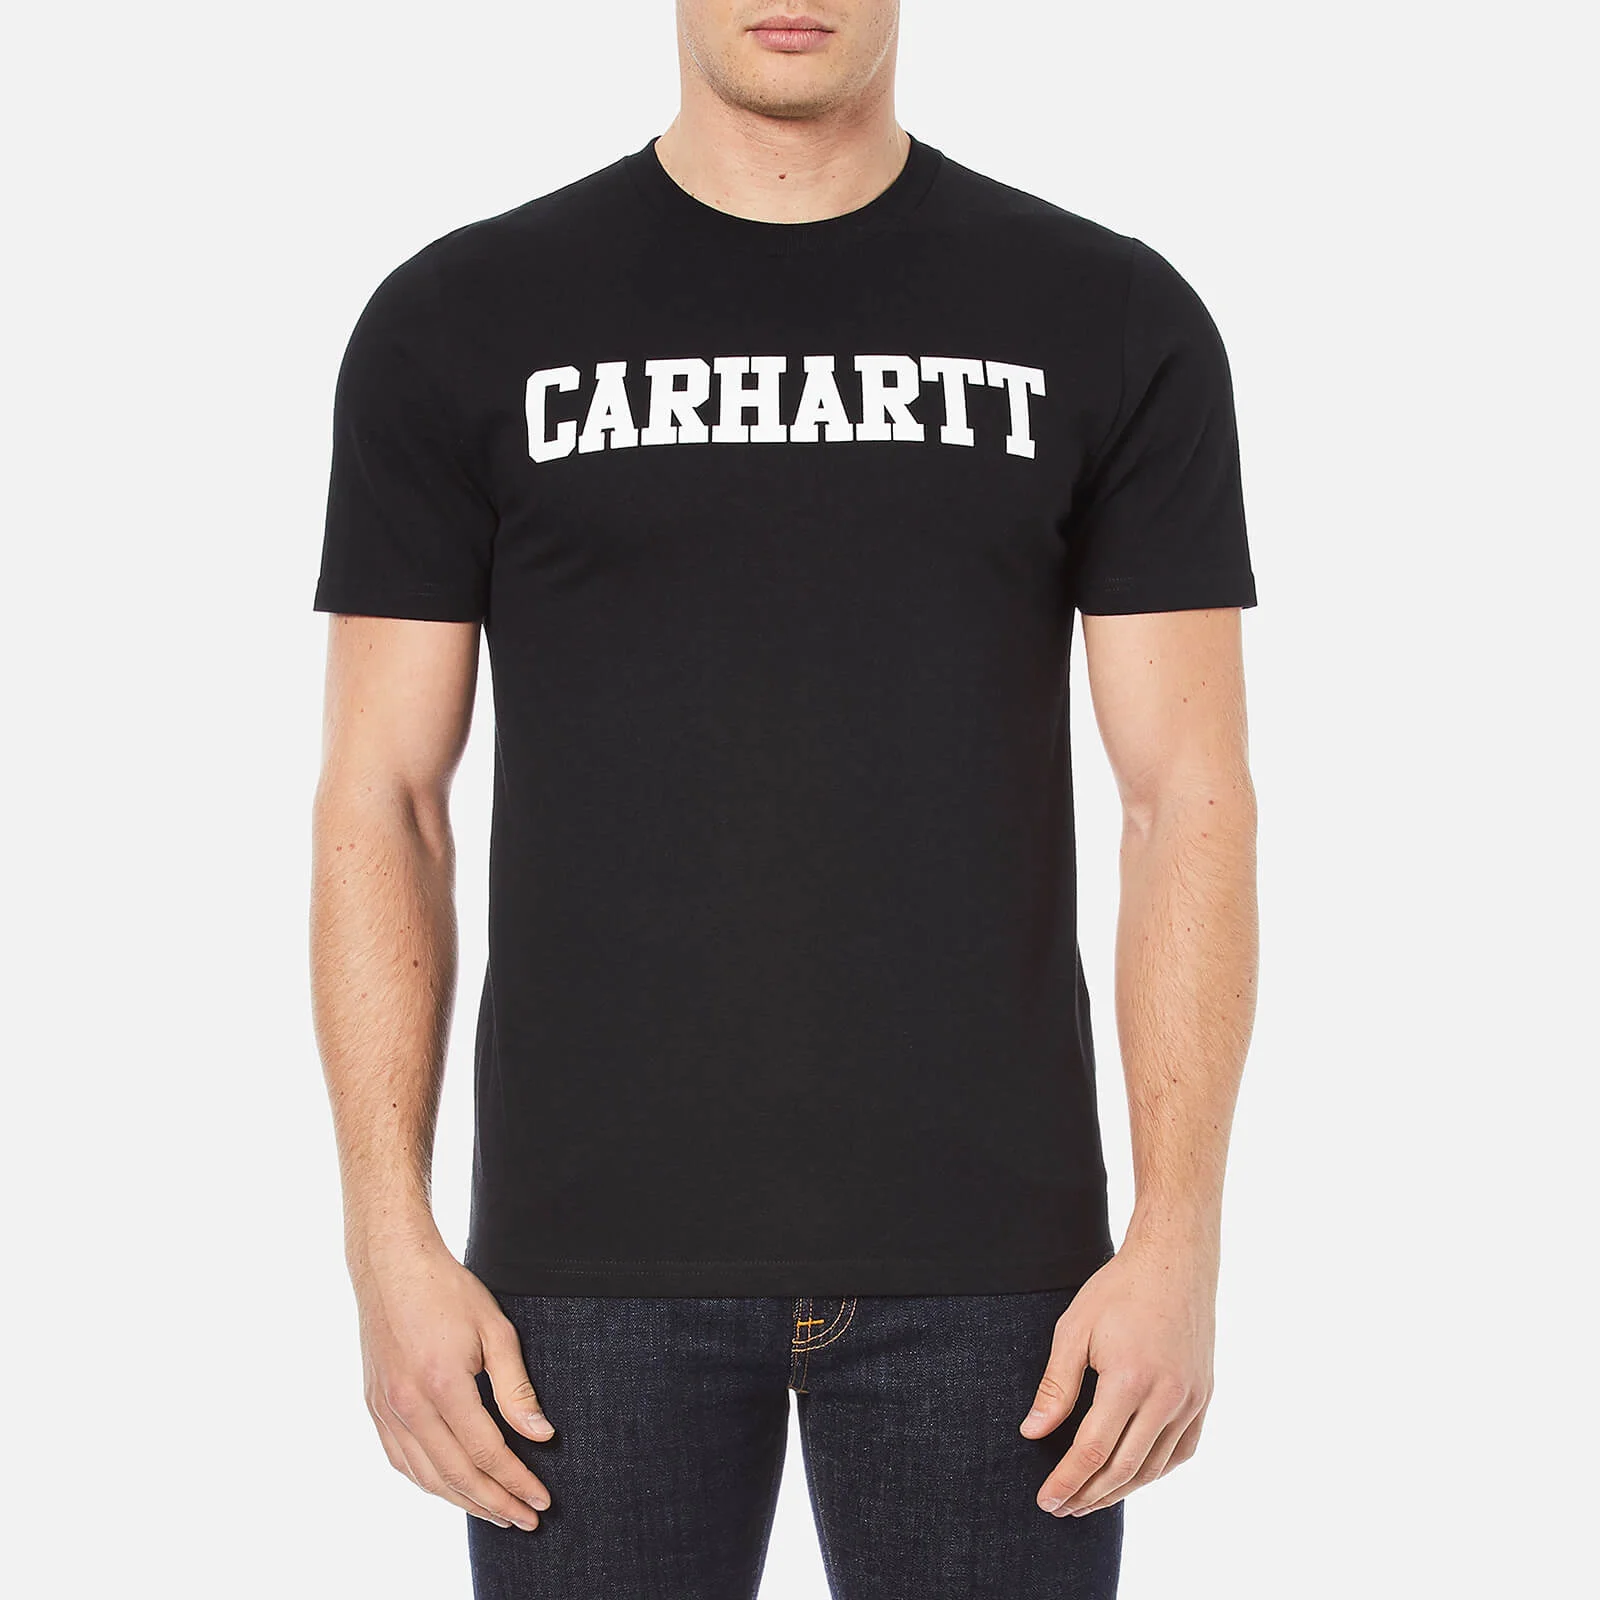 Carhartt Men's Short Sleeve College T-Shirt - Black/White Image 1